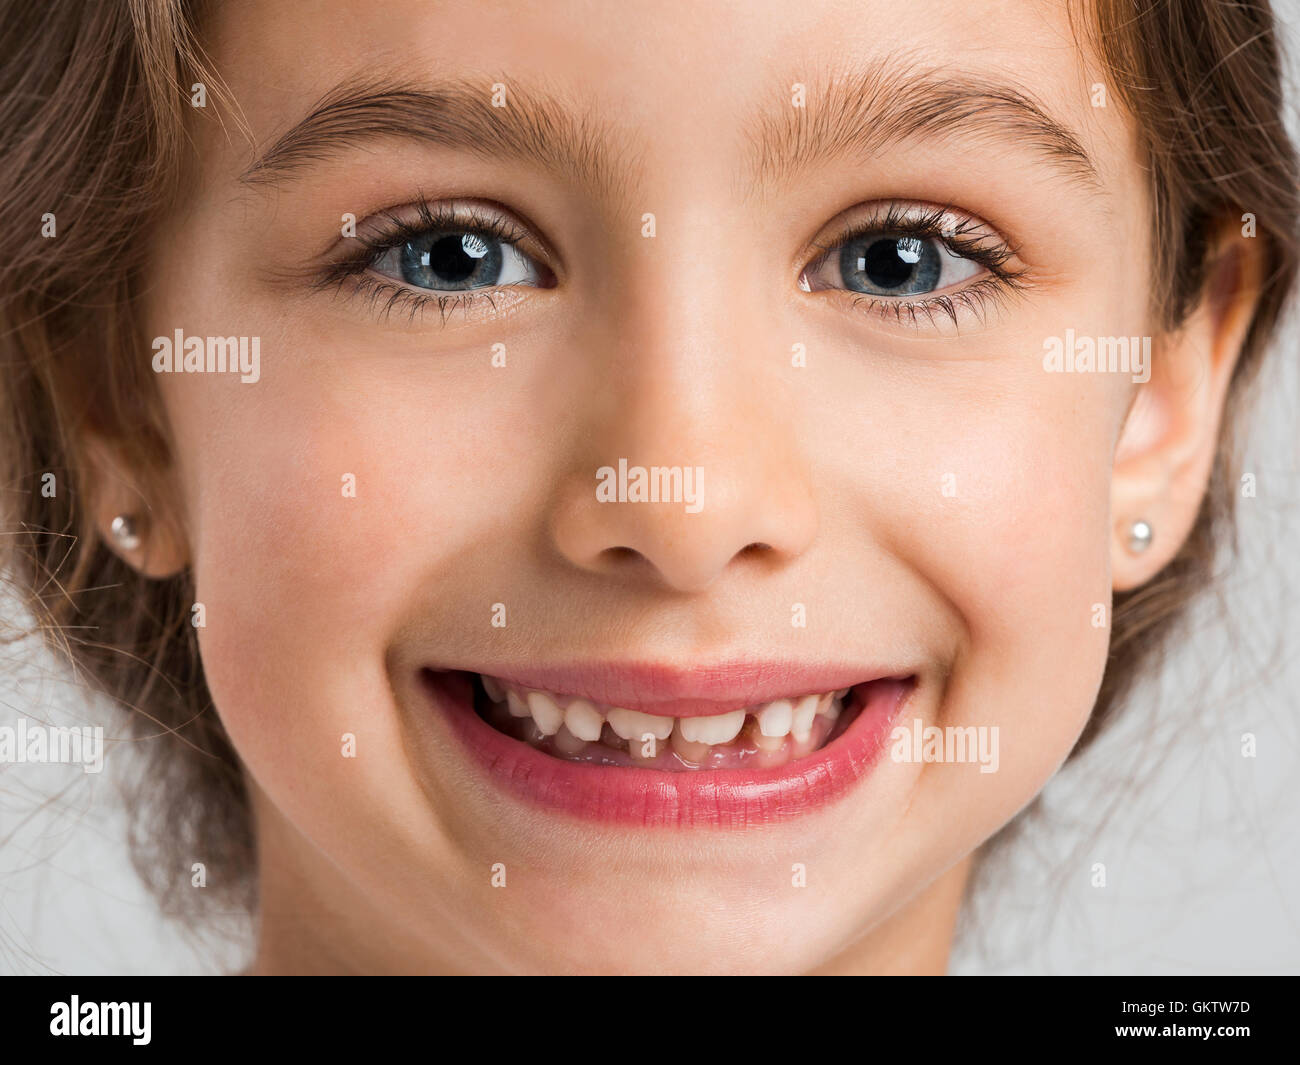 Studioportrait für ein schönes und glückliches Mädchen lächelnd Stockfoto